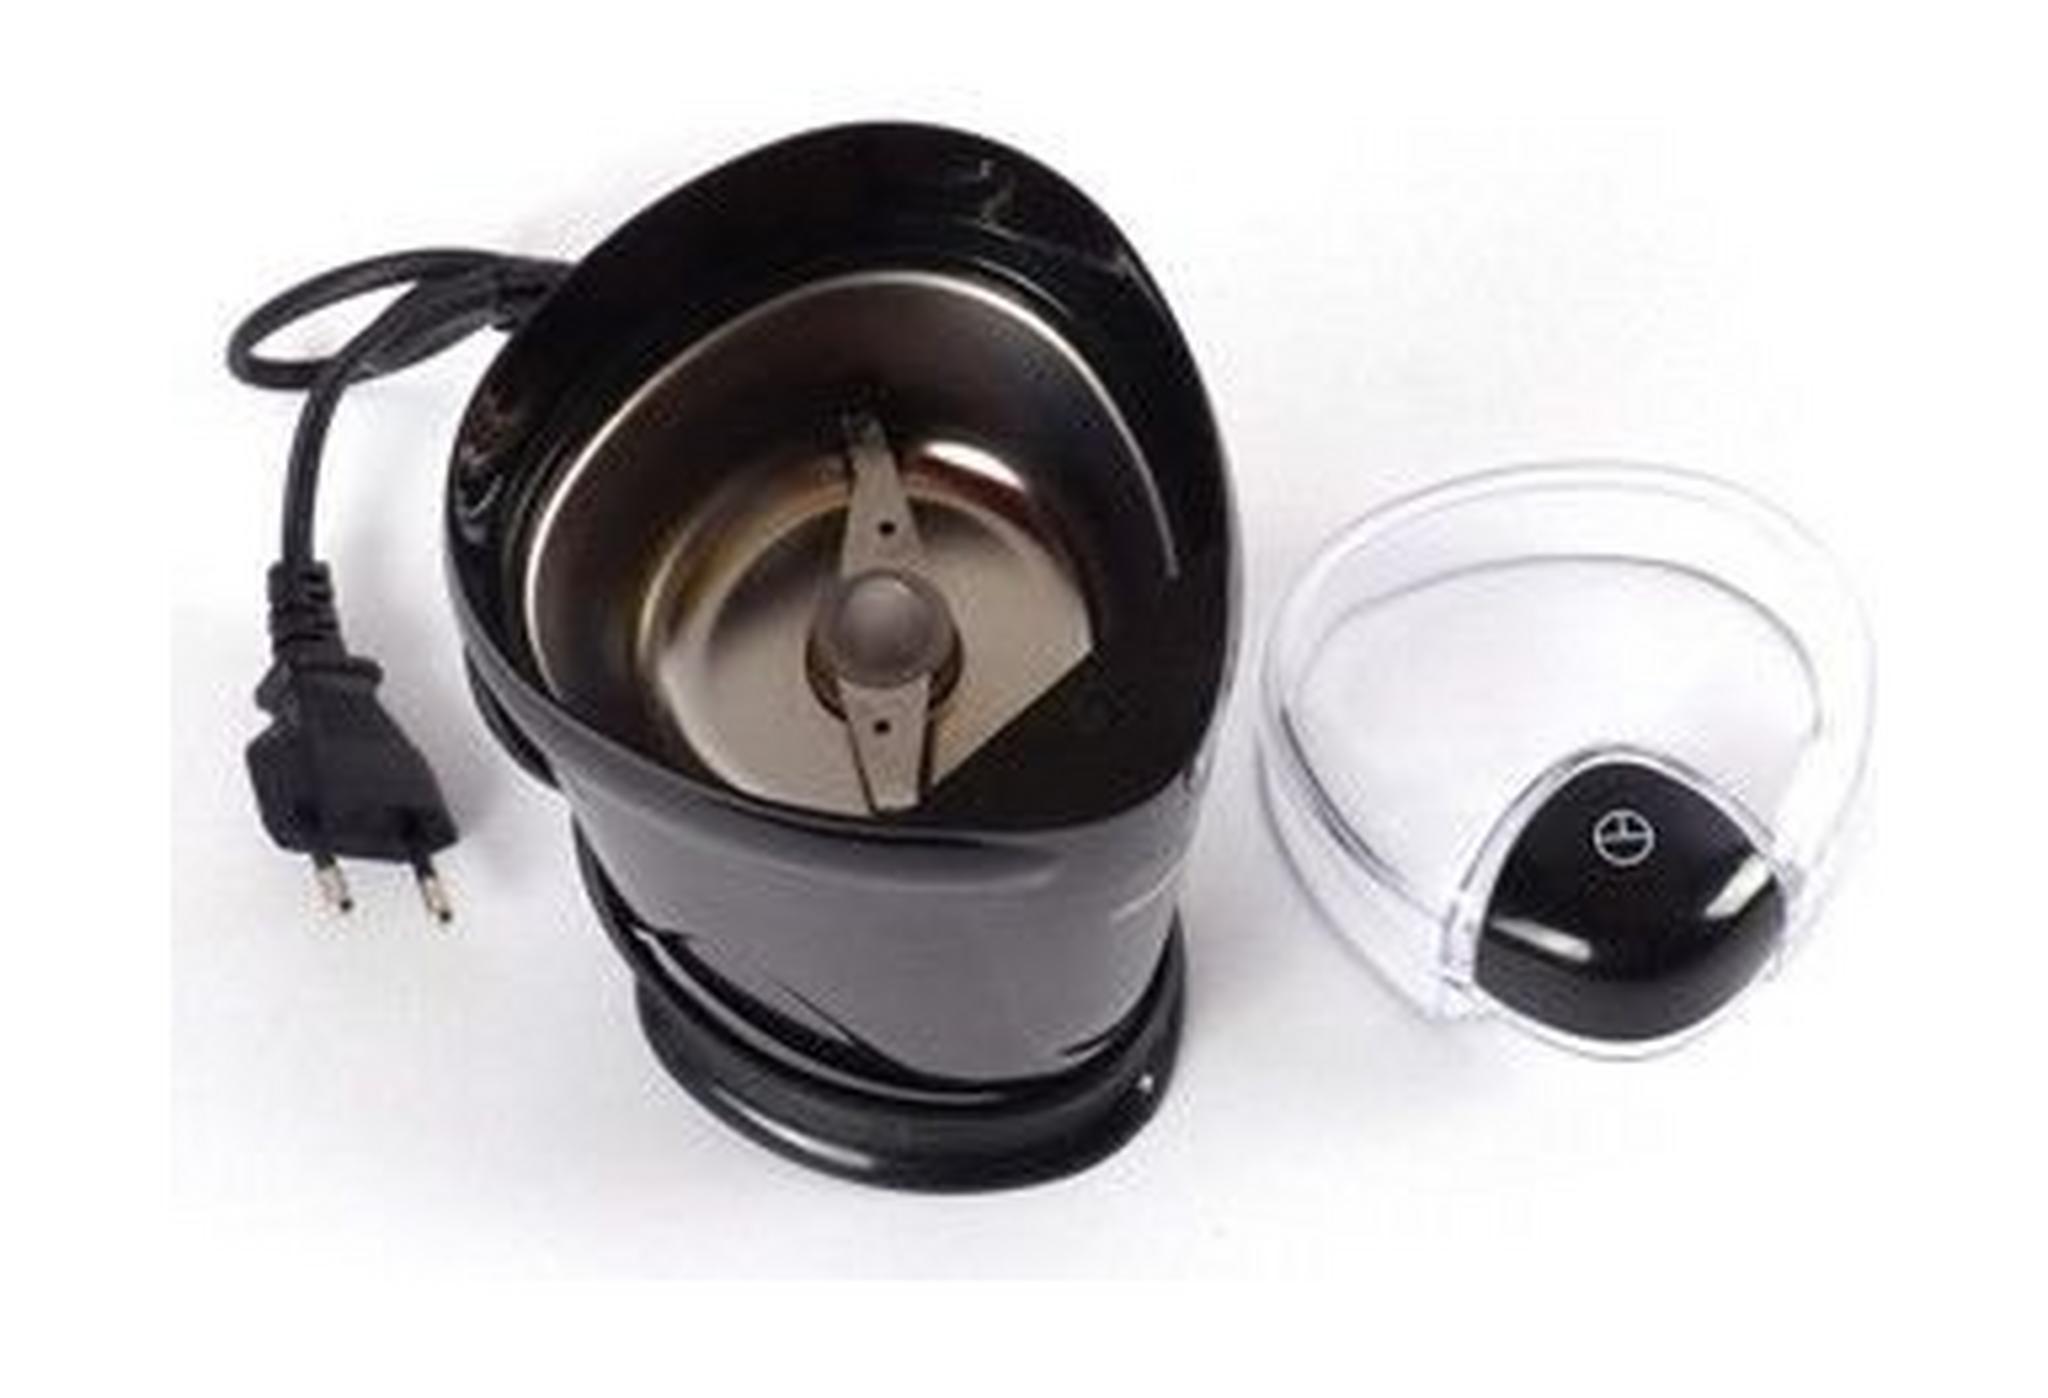 ماكينة طحن القهوة الكهربائية برينسيس بقوة ١٥٠ واط - أسود (242195)